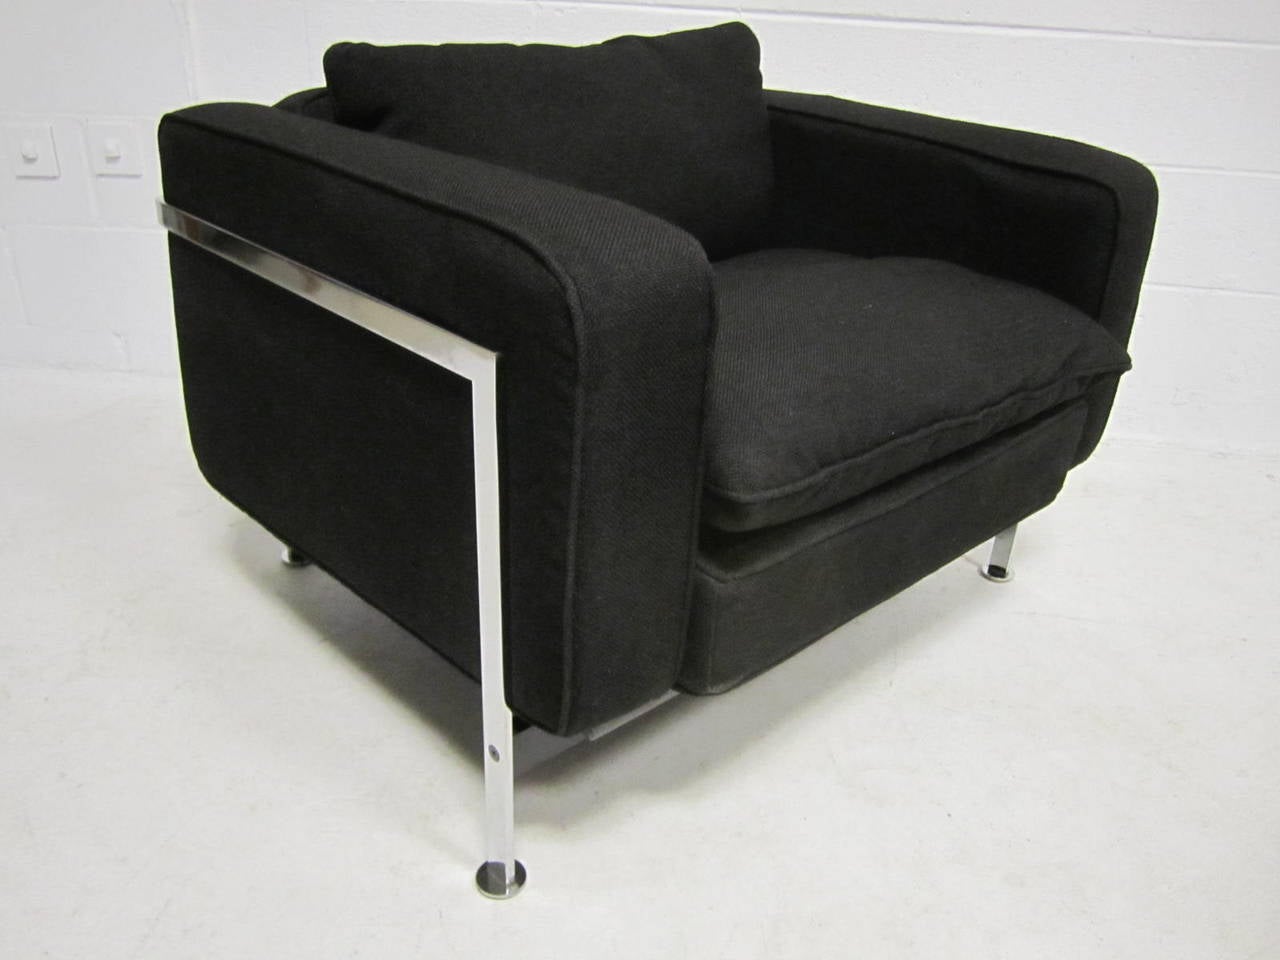 Robert Haussmann pour Steele, chaise longue en tissu et acier.
Haussmann s'inspire de la série LC de LeCorbusier et utilise ici de l'acier massif poli, avec un cadre d'assise en bois et des coussins remplis de duvet.  Le tissu noir épais d'origine